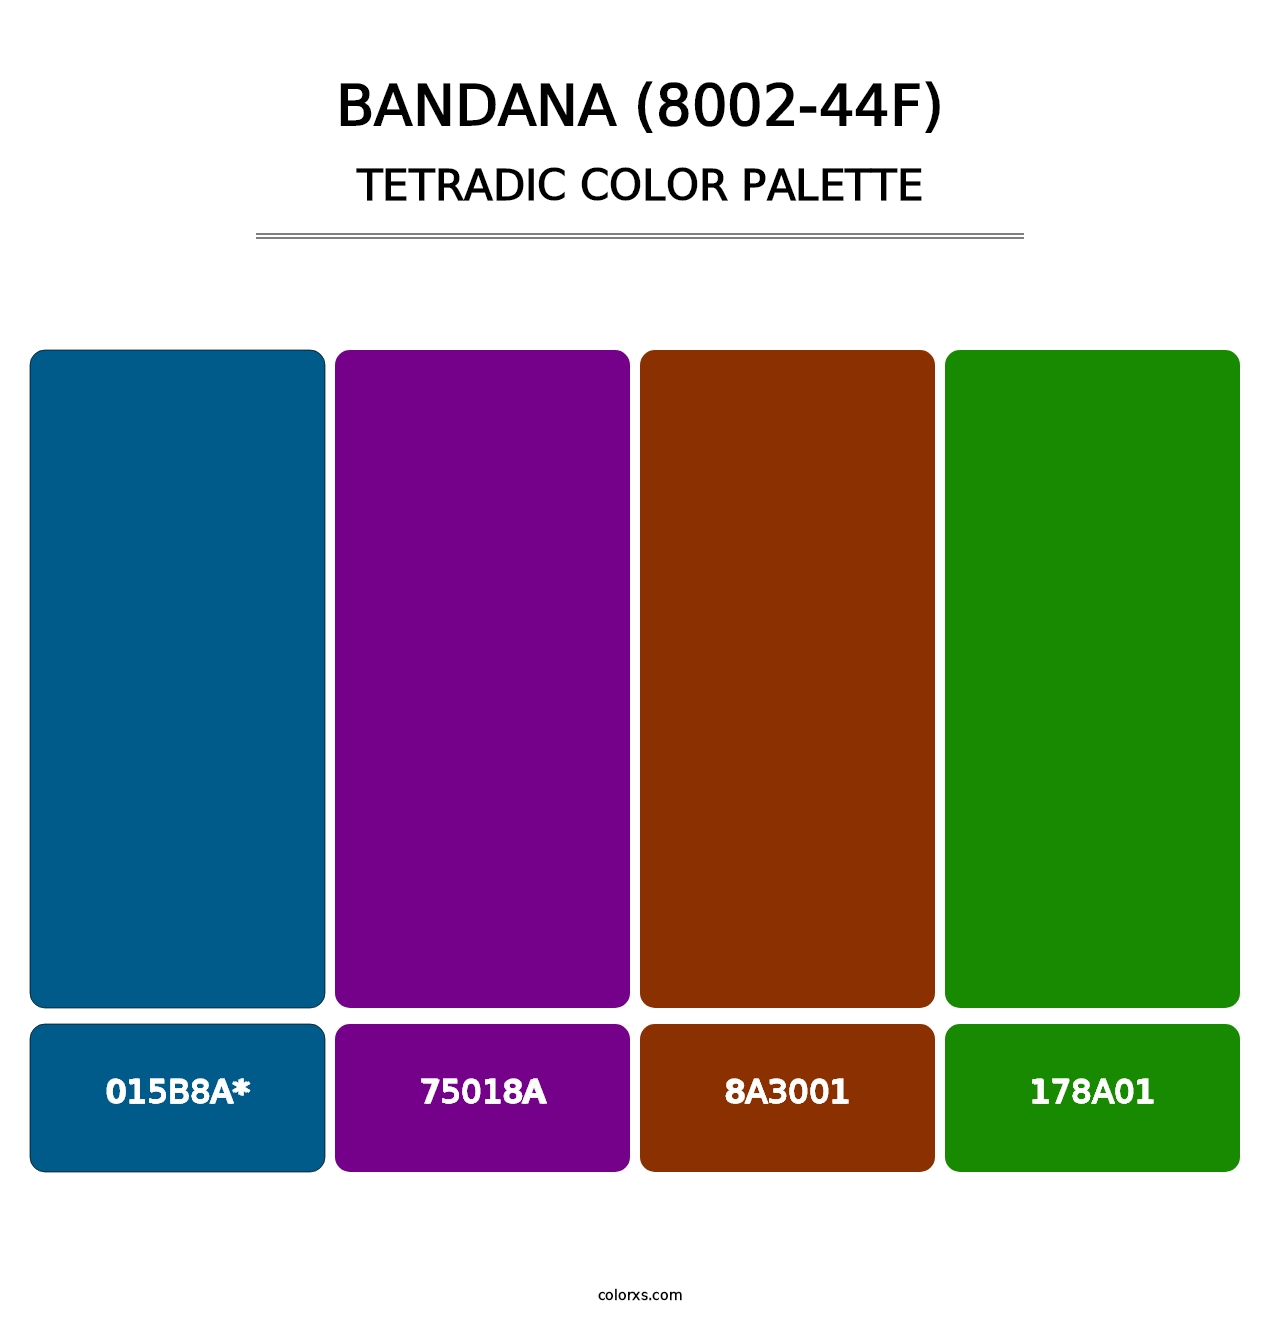 Bandana (8002-44F) - Tetradic Color Palette